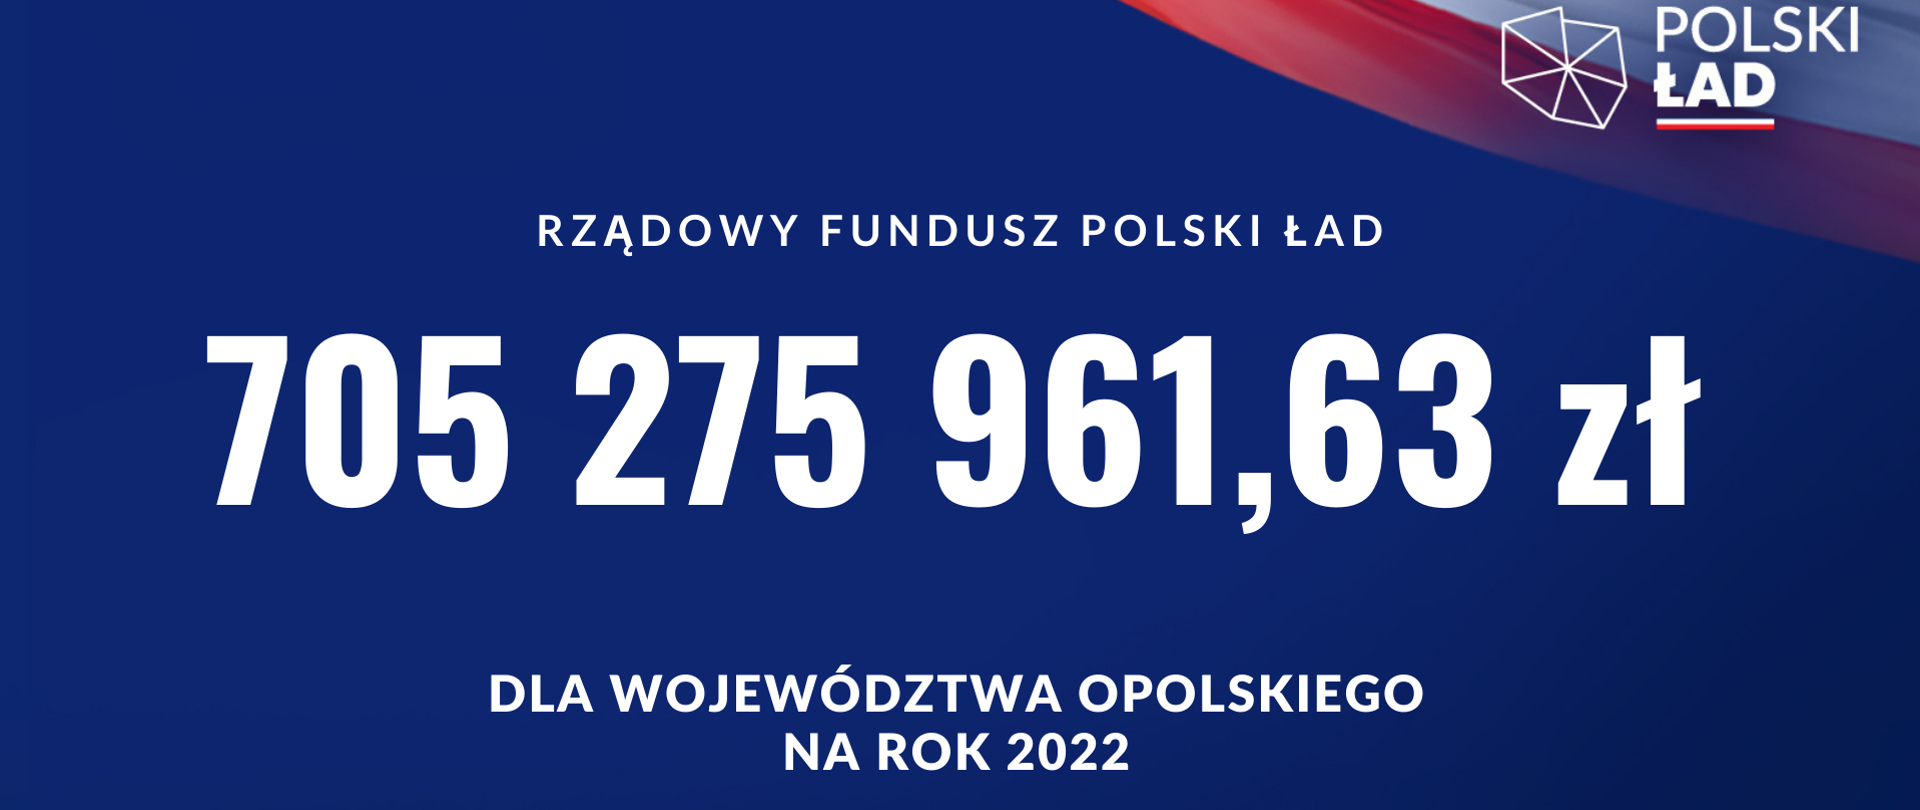 Plansza info. o kwocie przyznanej dla woj. opolskiego w roku 2022